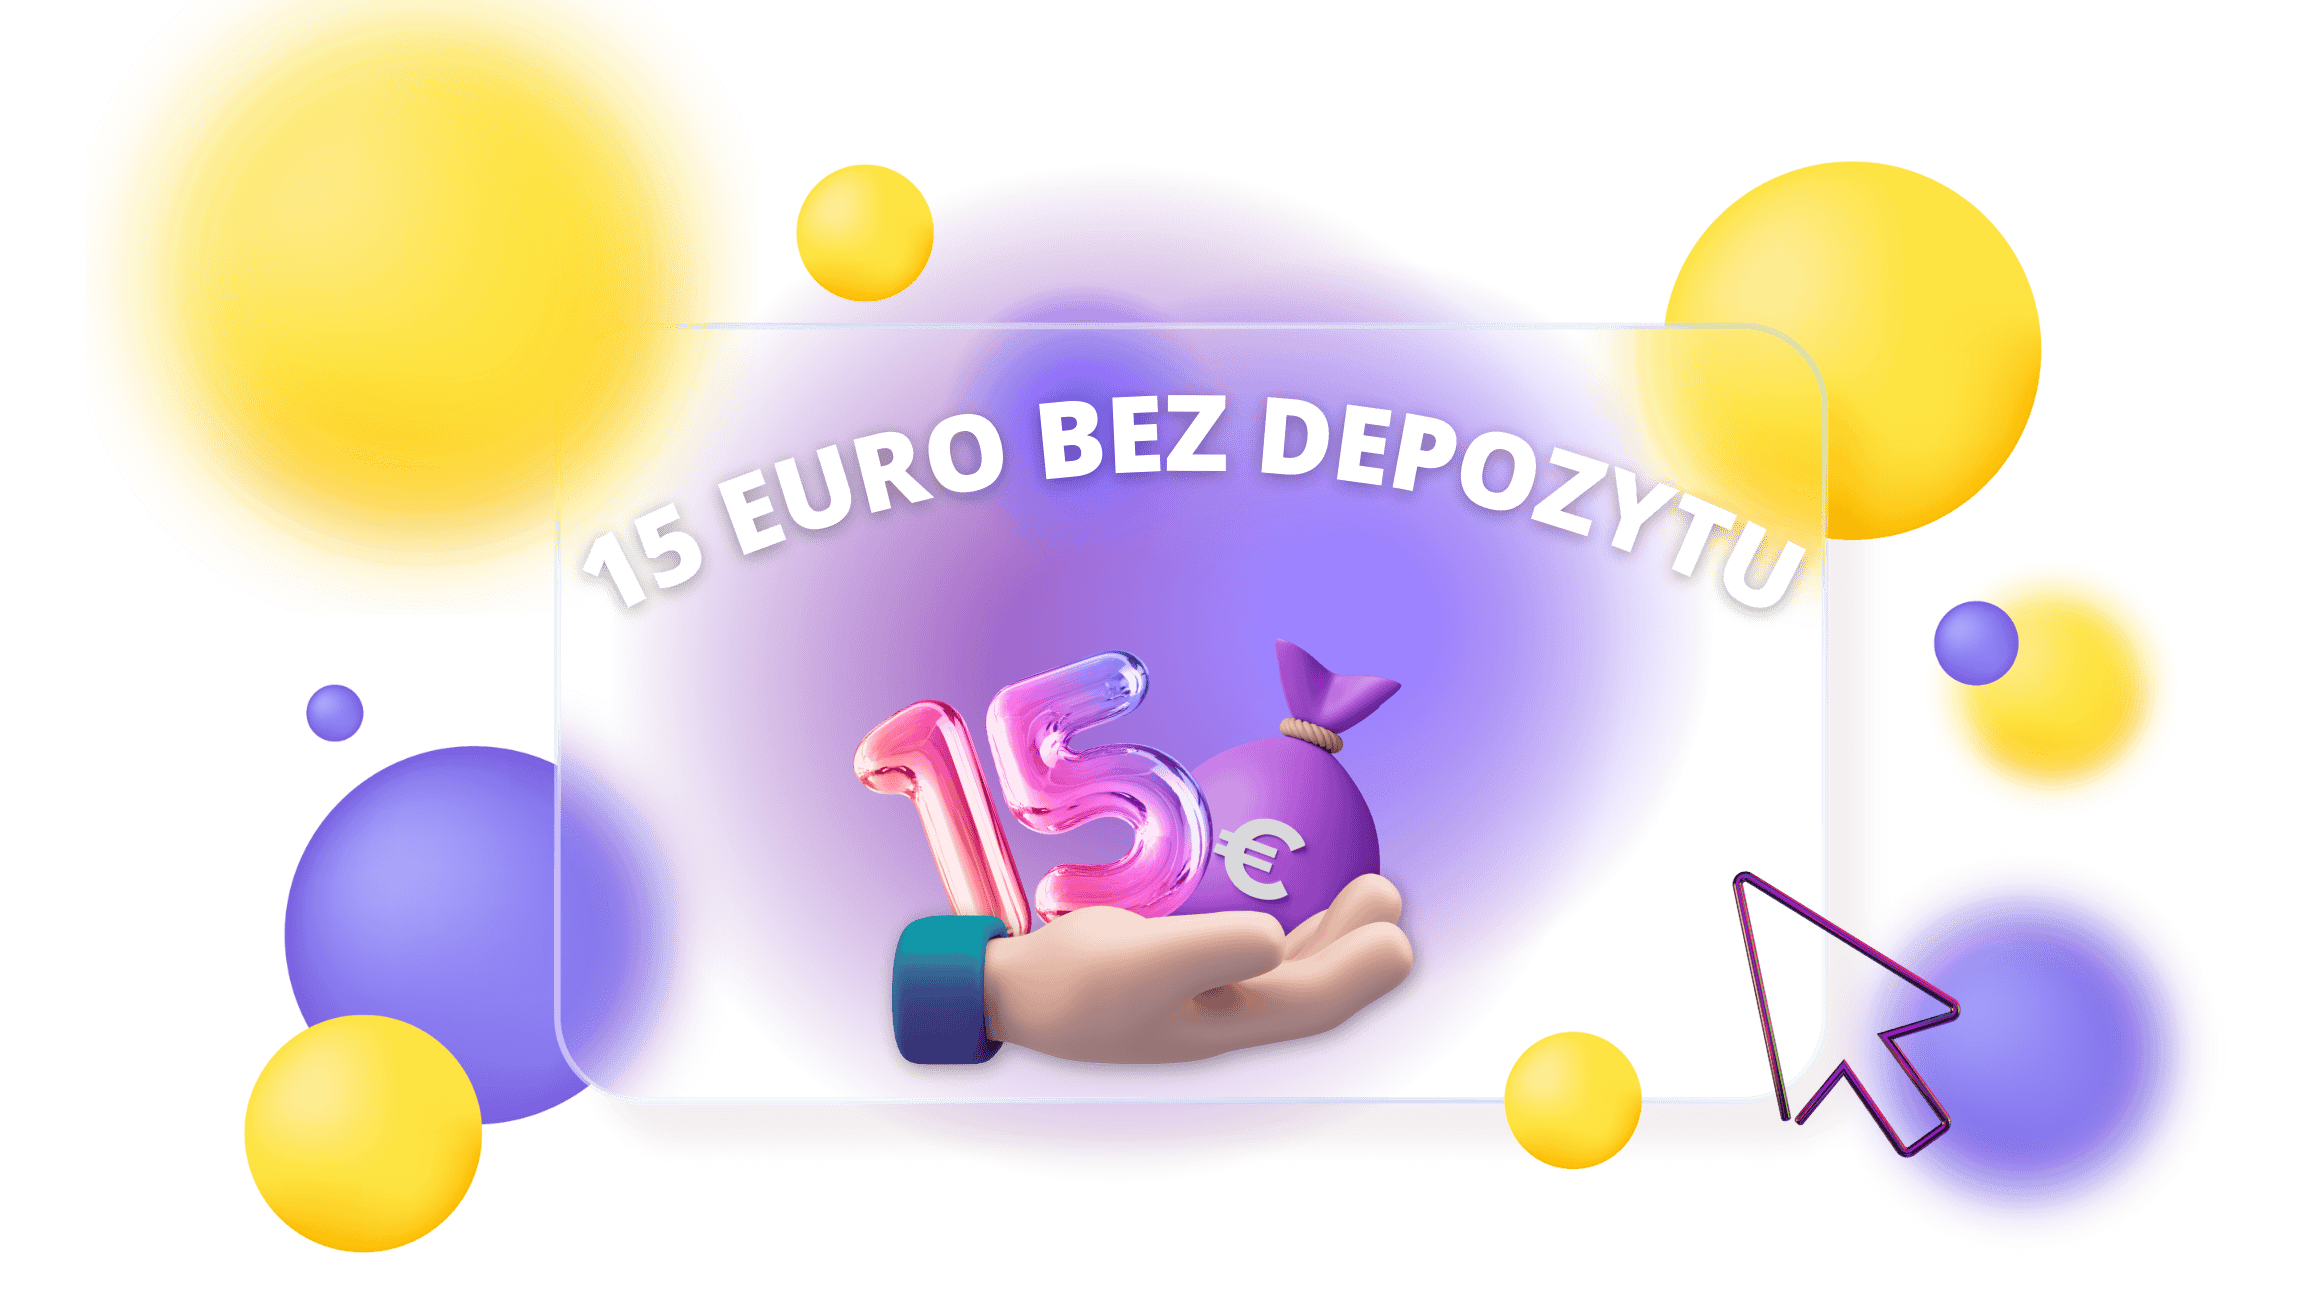 15 Euro bez depozytu Nowekasyna-pl.com